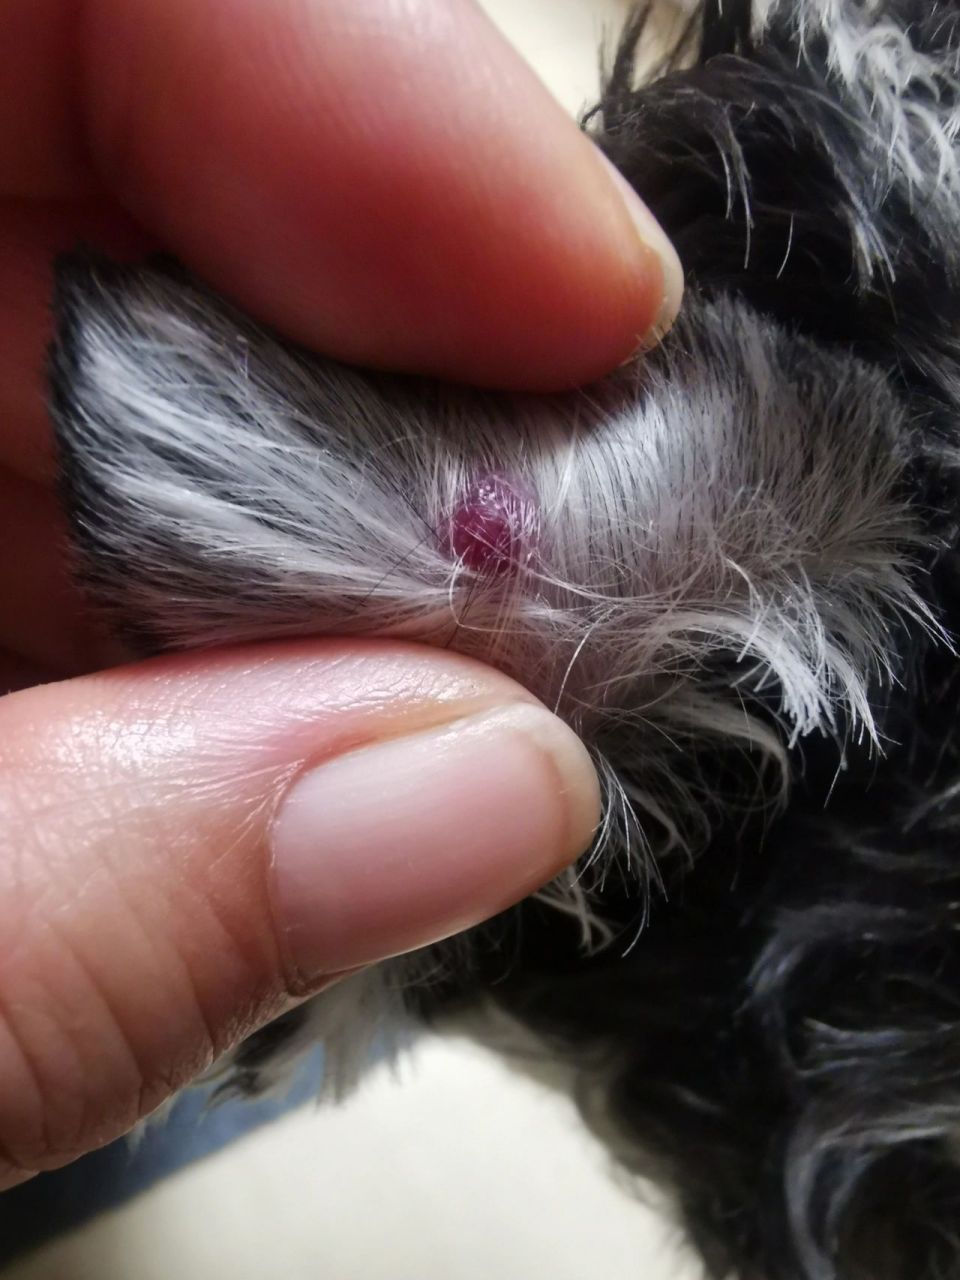 狗狗耳朵上有个硬疙瘩 本来是粉红色的疙瘩,估计是被我按压了两下有点